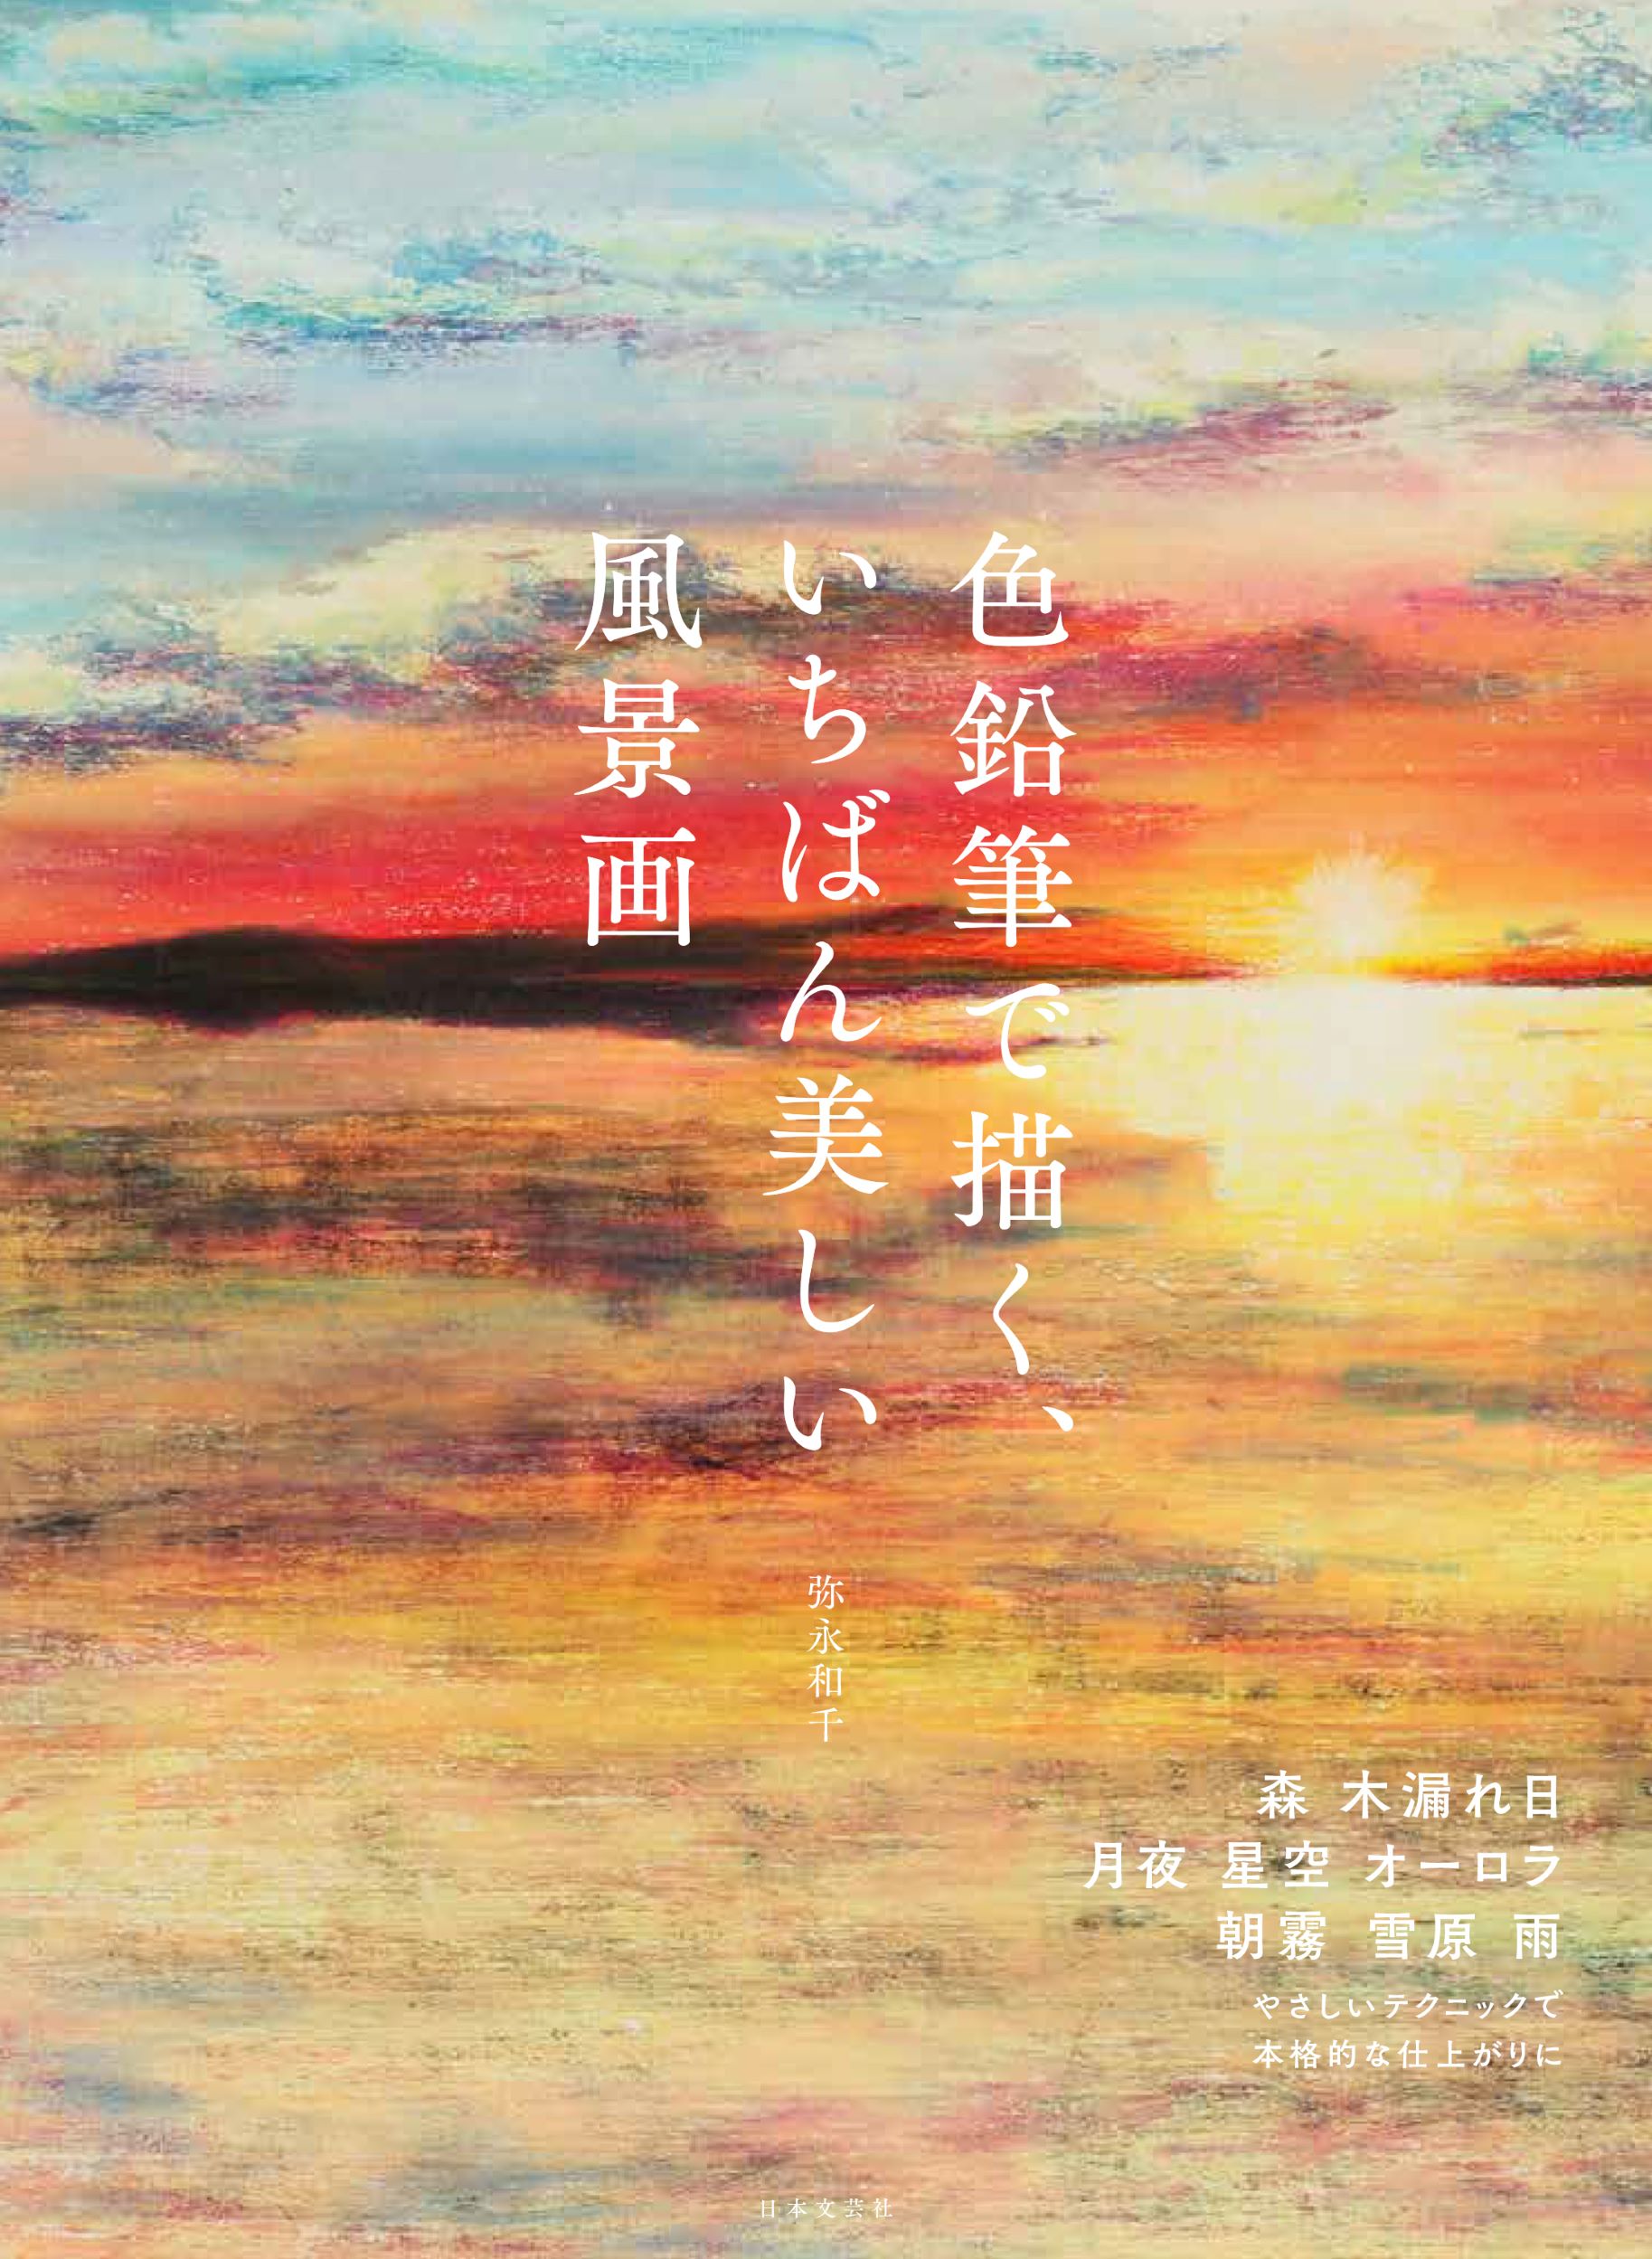 色鉛筆で描く空と自然の美しさ グラデーションがかなえる迫力の風景画の描き方 をていねいに紹介する 色鉛筆で描く いちばん美しい風景画 10 27発売 株式会社日本文芸社のプレスリリース